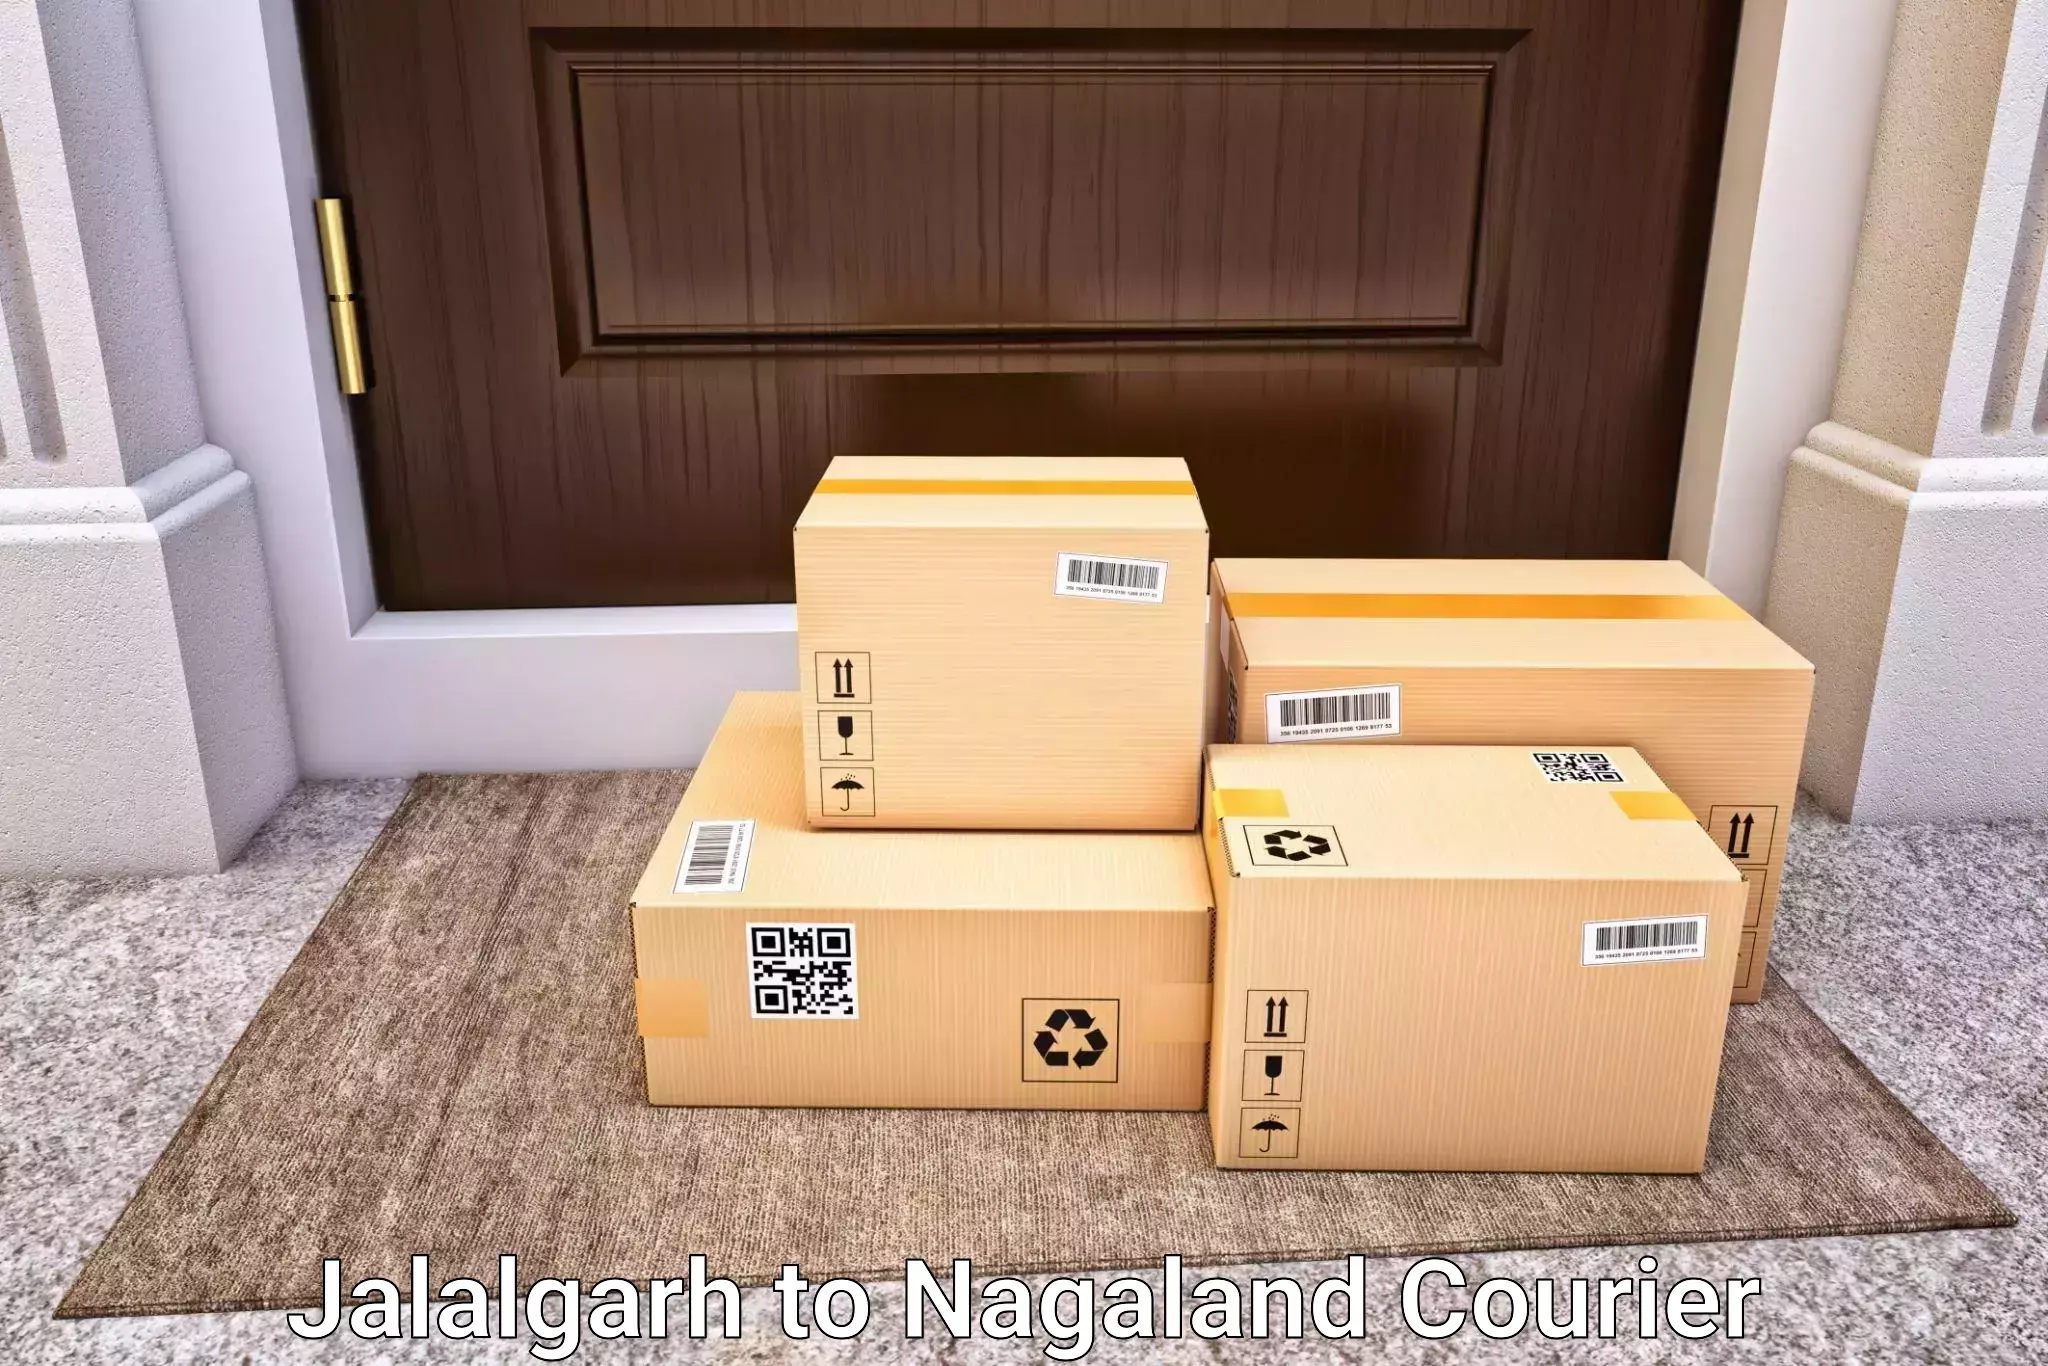 Luggage transport tips Jalalgarh to Nagaland